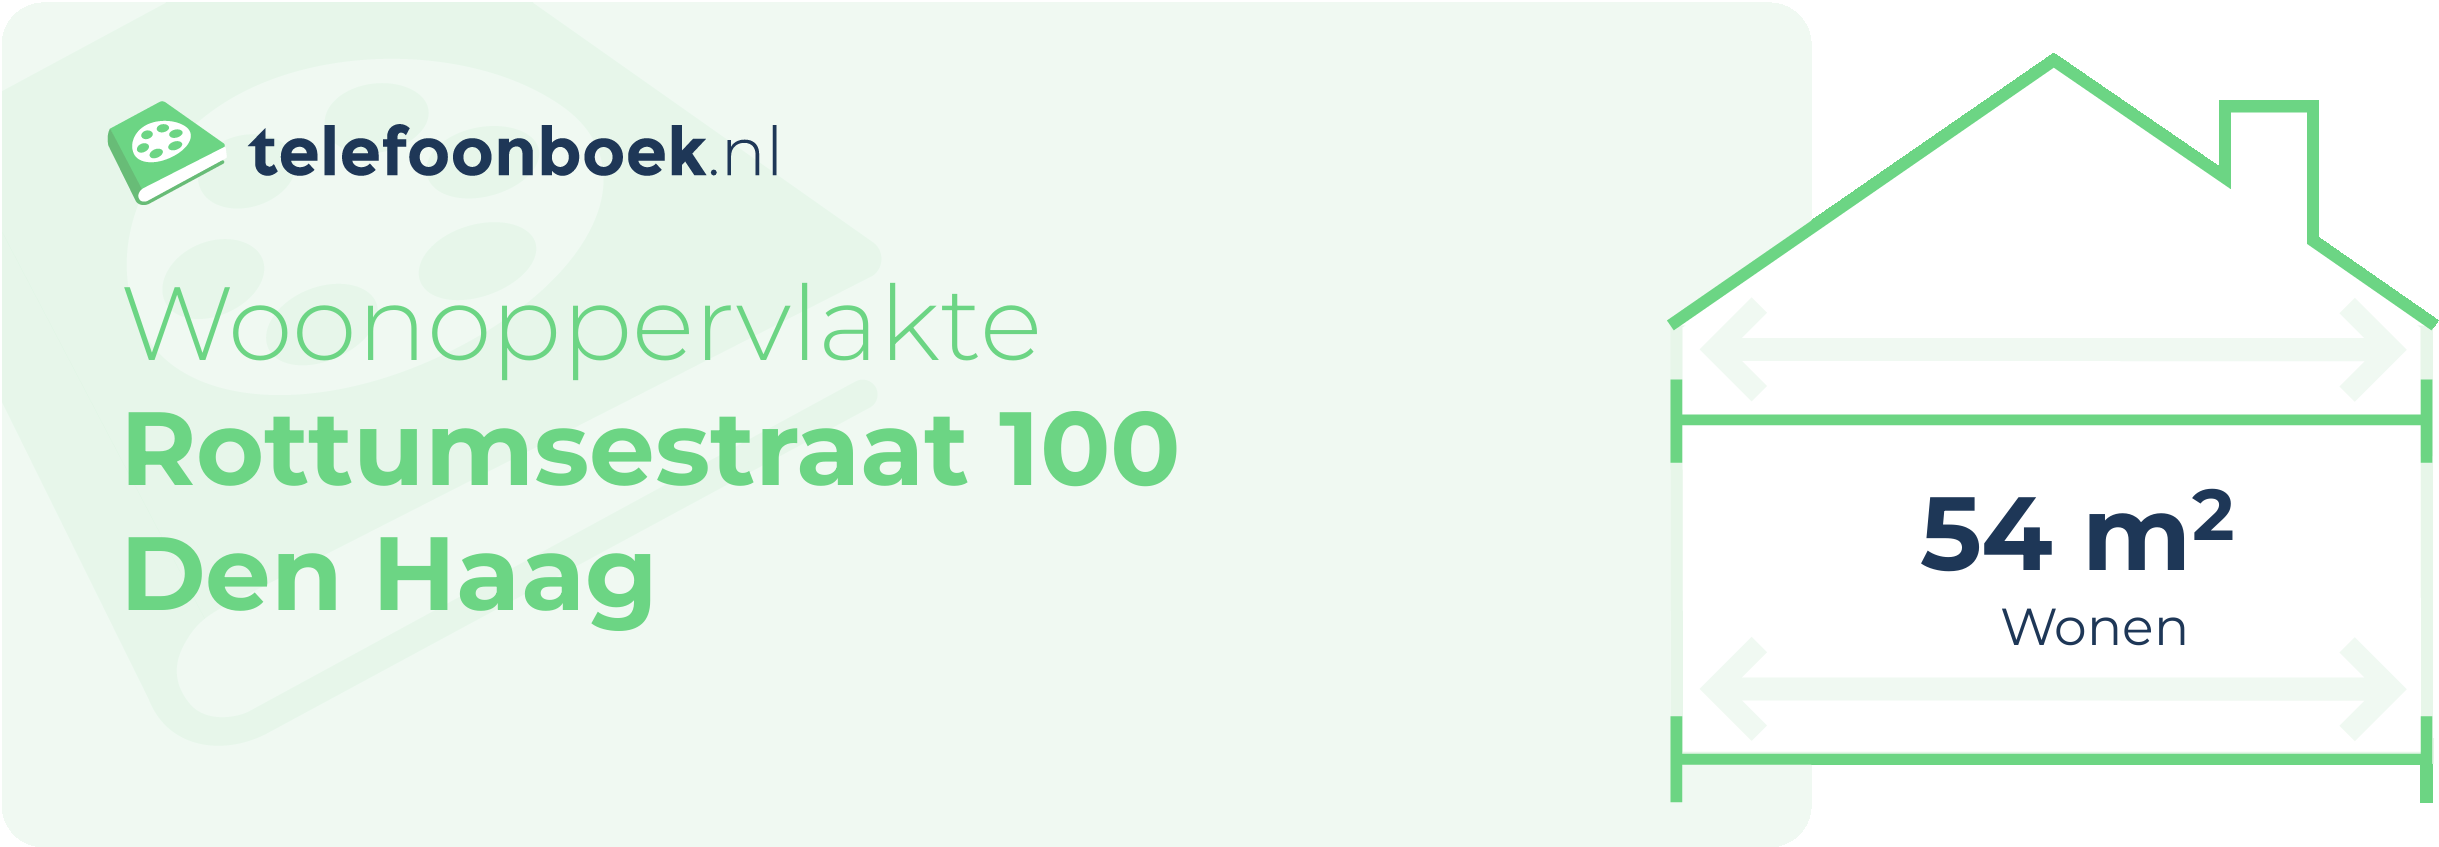 Woonoppervlakte Rottumsestraat 100 Den Haag